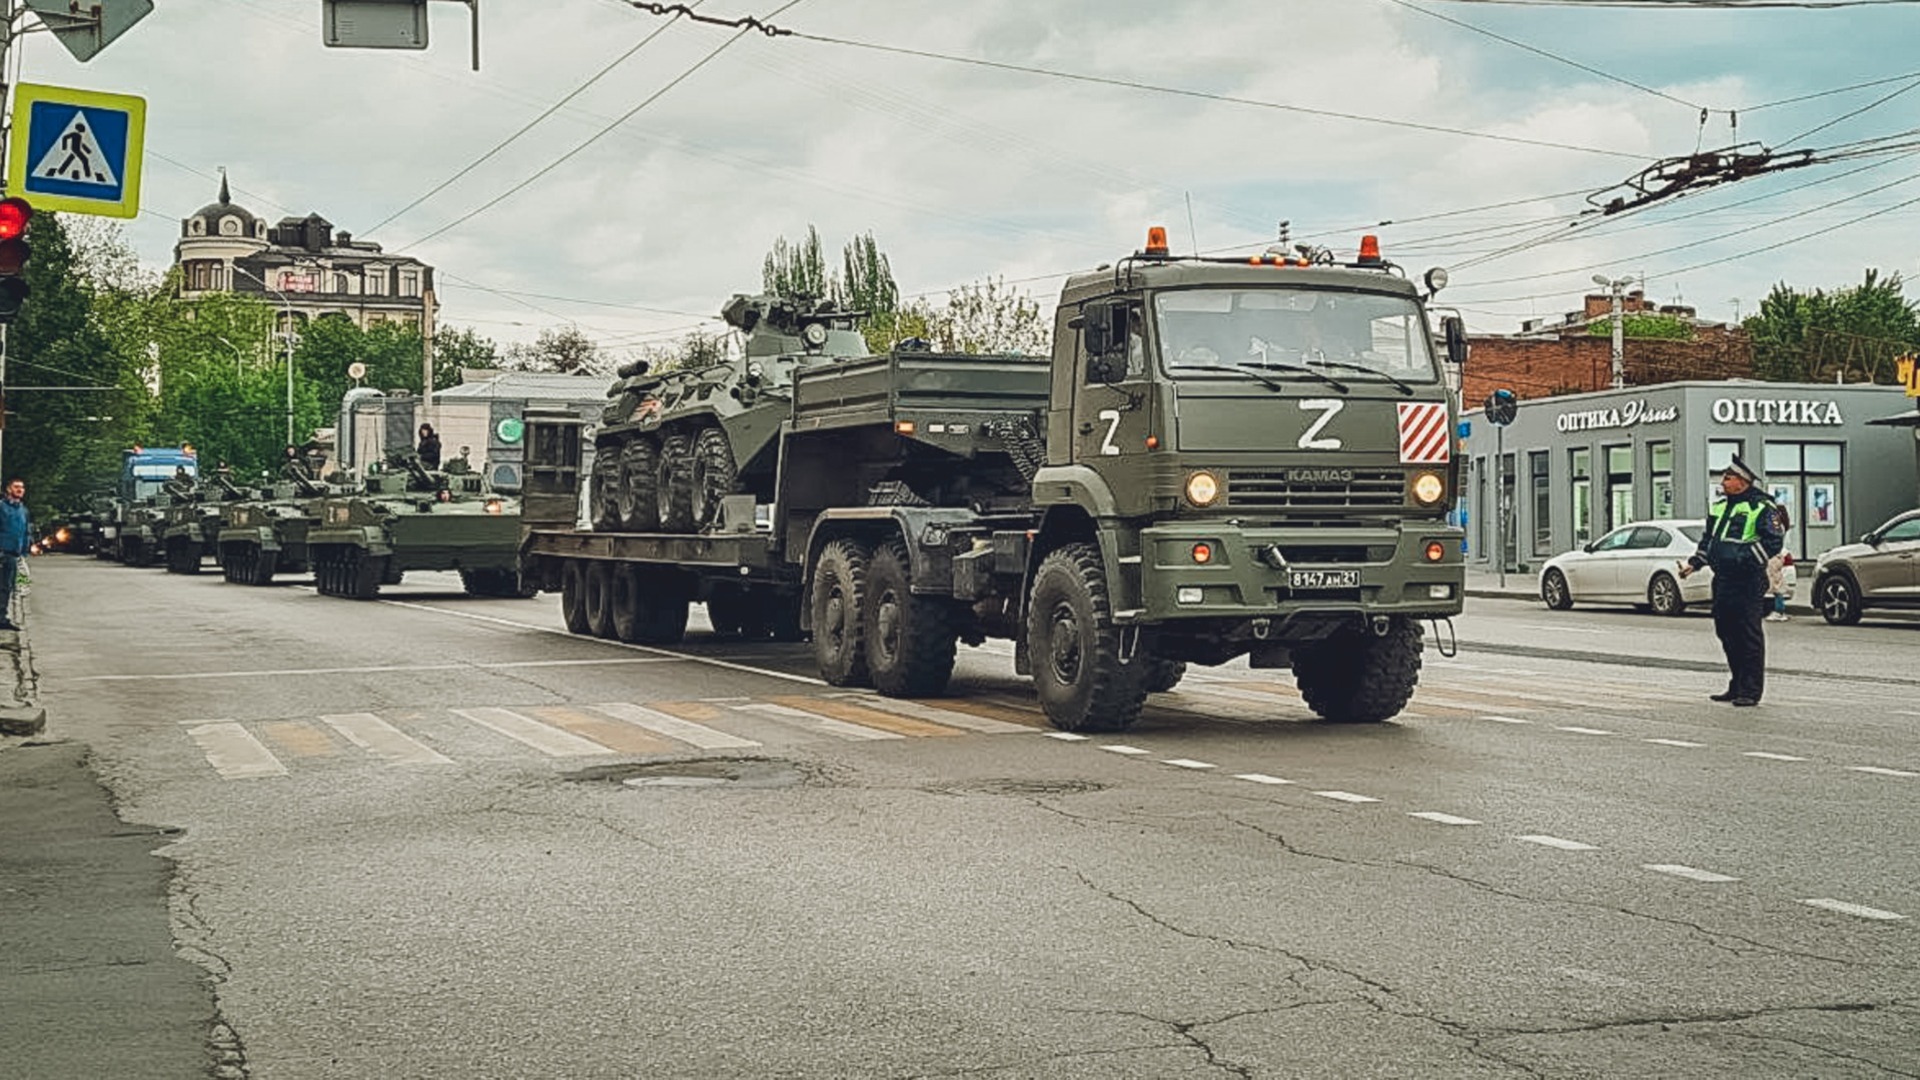 В Югре заметили военные броневики и зарабатывают на шишках: итоги дня в ХМАО